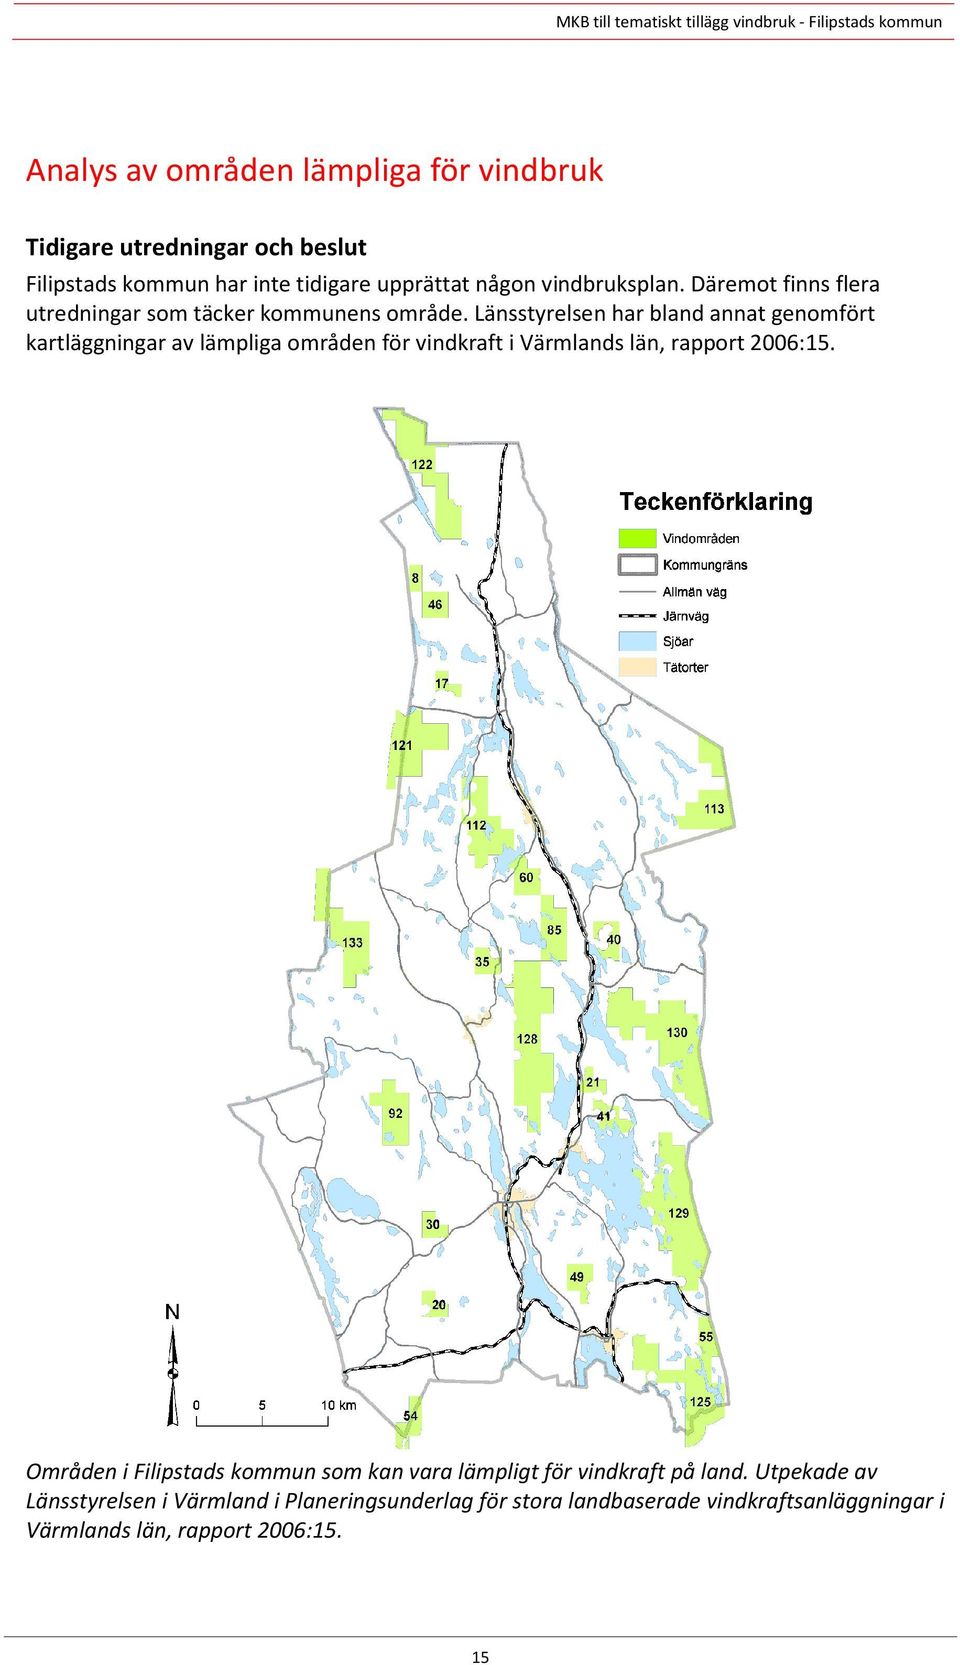 Länsstyrelsen har bland annat genomfört kartläggningar av lämpliga områden för vindkraft i Värmlands län, rapport 2006:15.